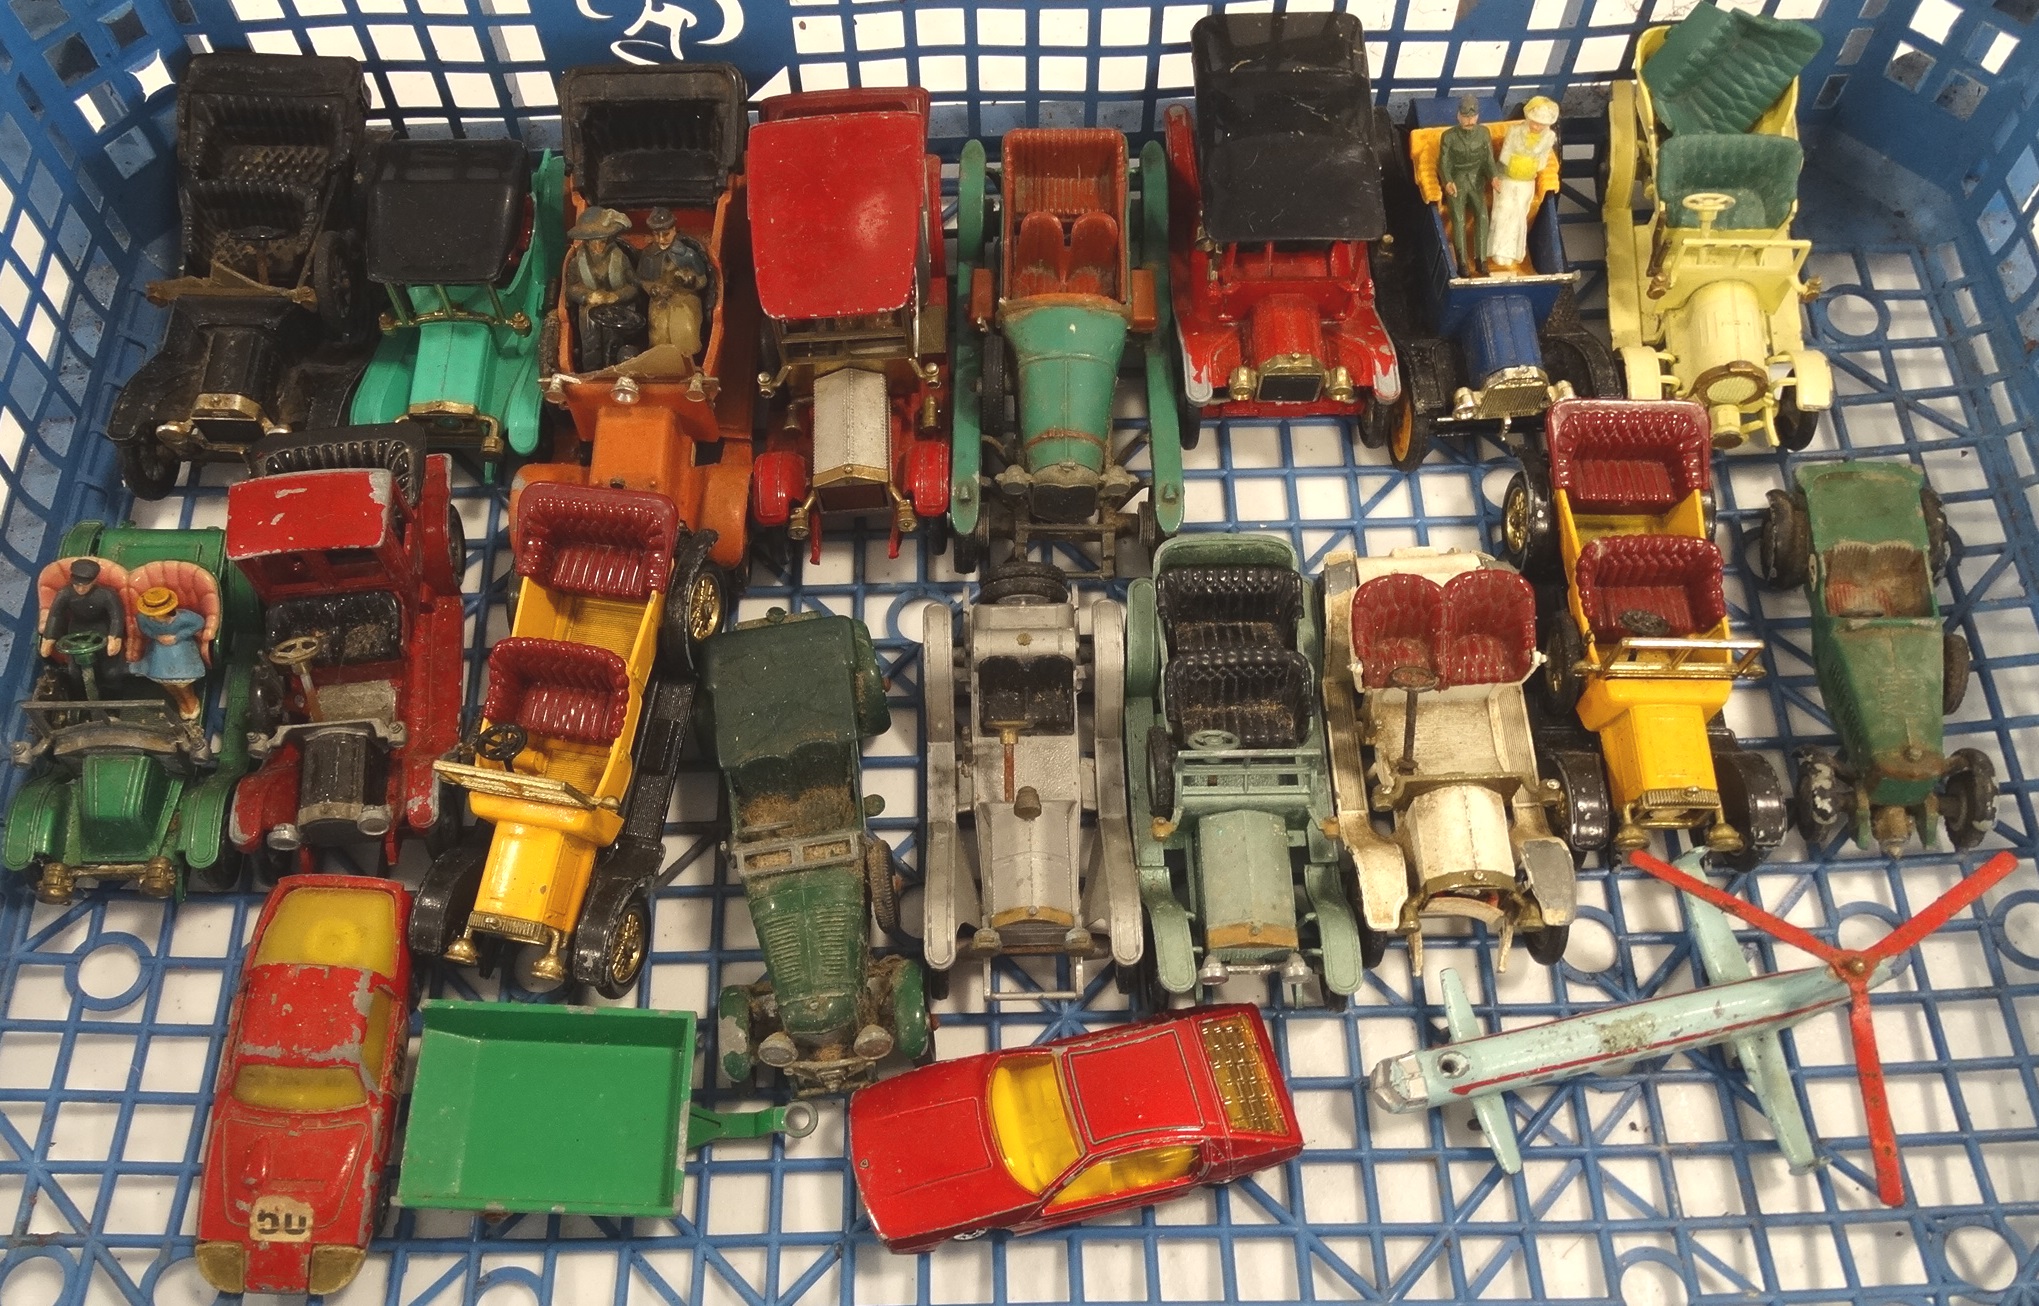 Matchbox model vehicles